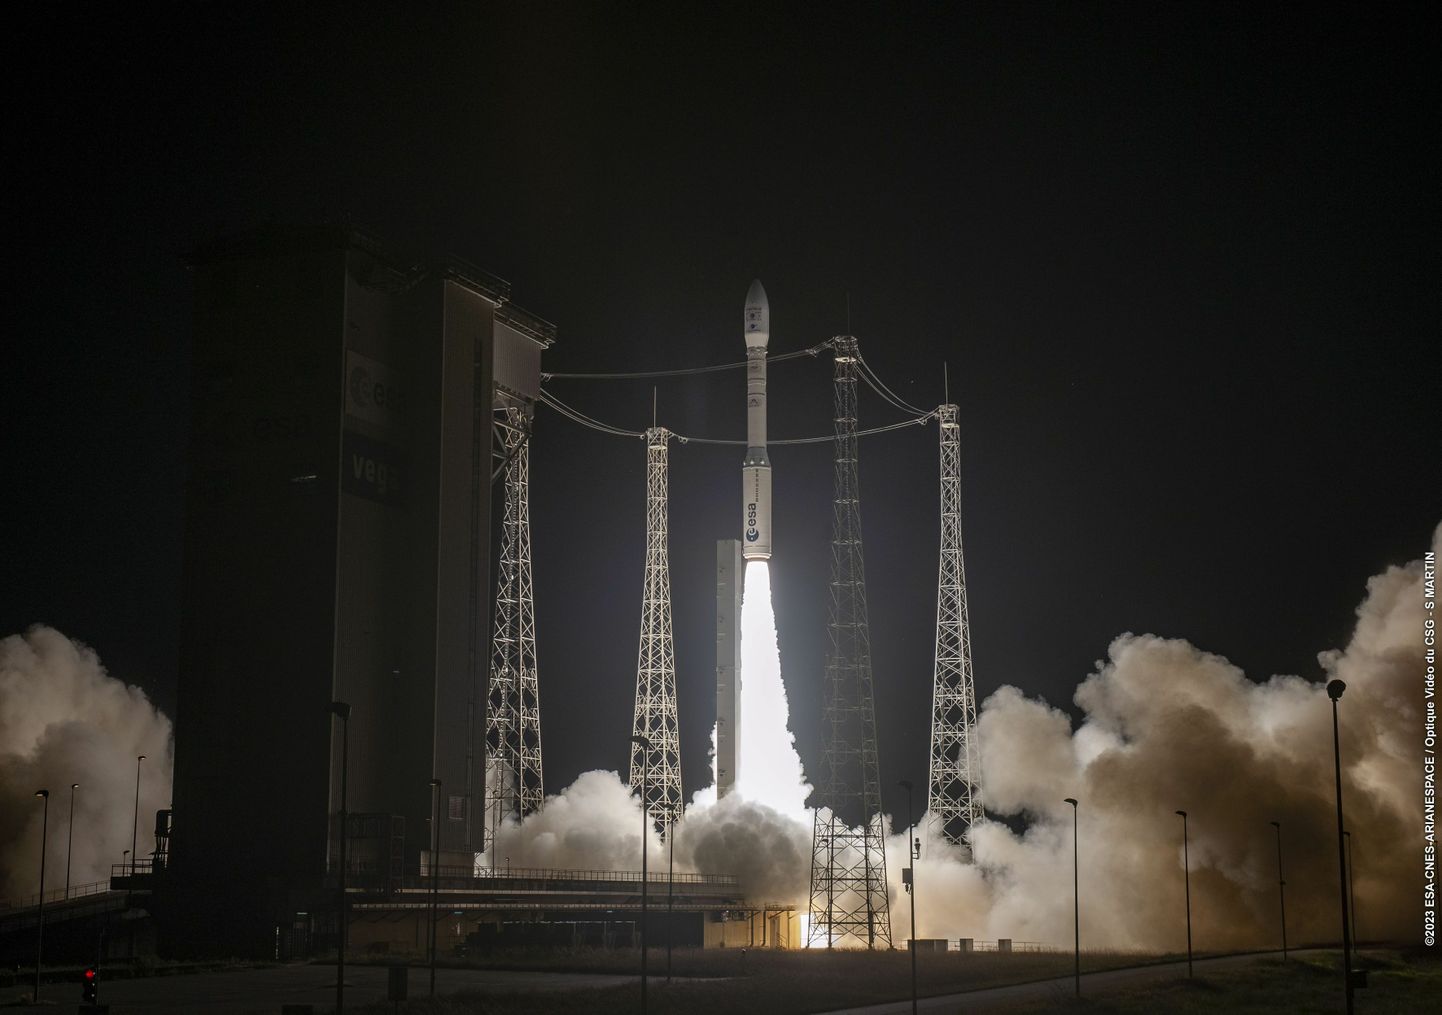 9. oktoobri varahommikul oli kanderaketis Vega teel orbiidile 12 «reisijat». Nüüd on teada, et suure tõenäosusega kaks neist «reisijaist» orbiidile ei jõudnud ning on koos raketi ülemise osaga atmosfääris ära põlenud.